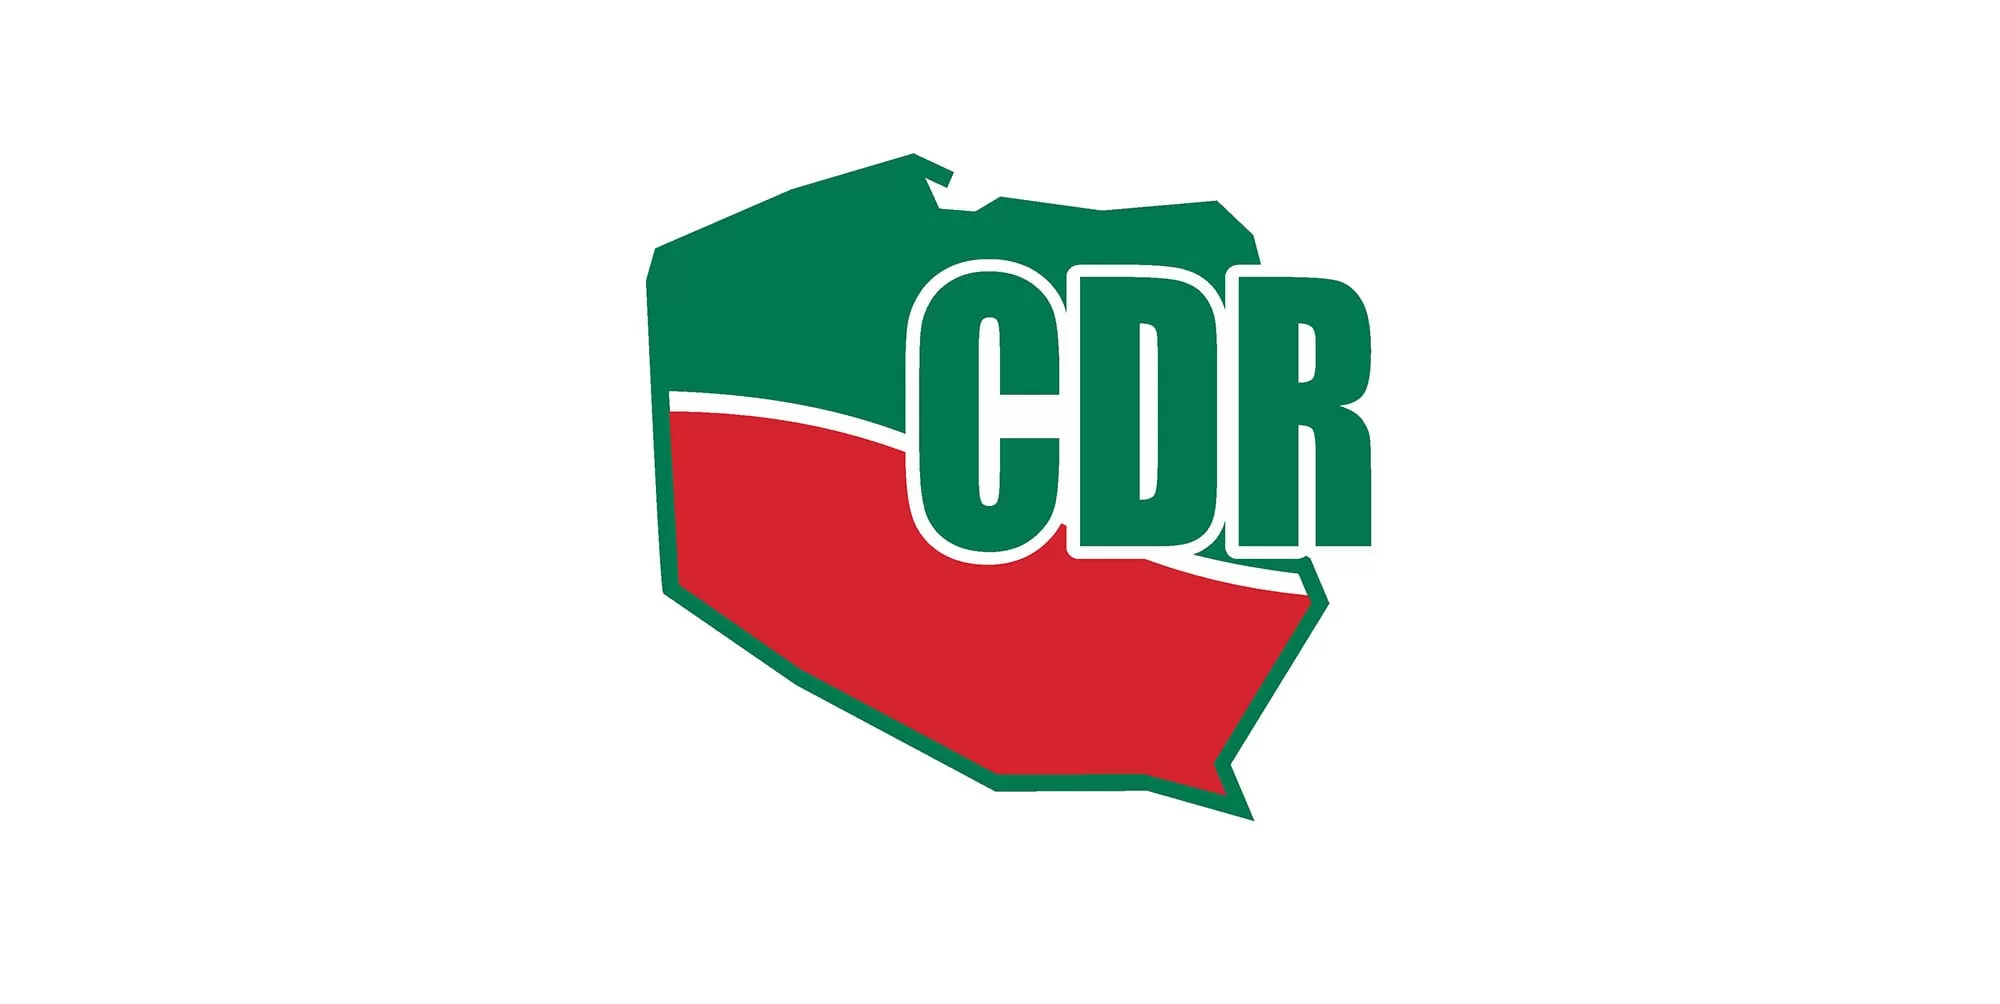 CDR partner logo